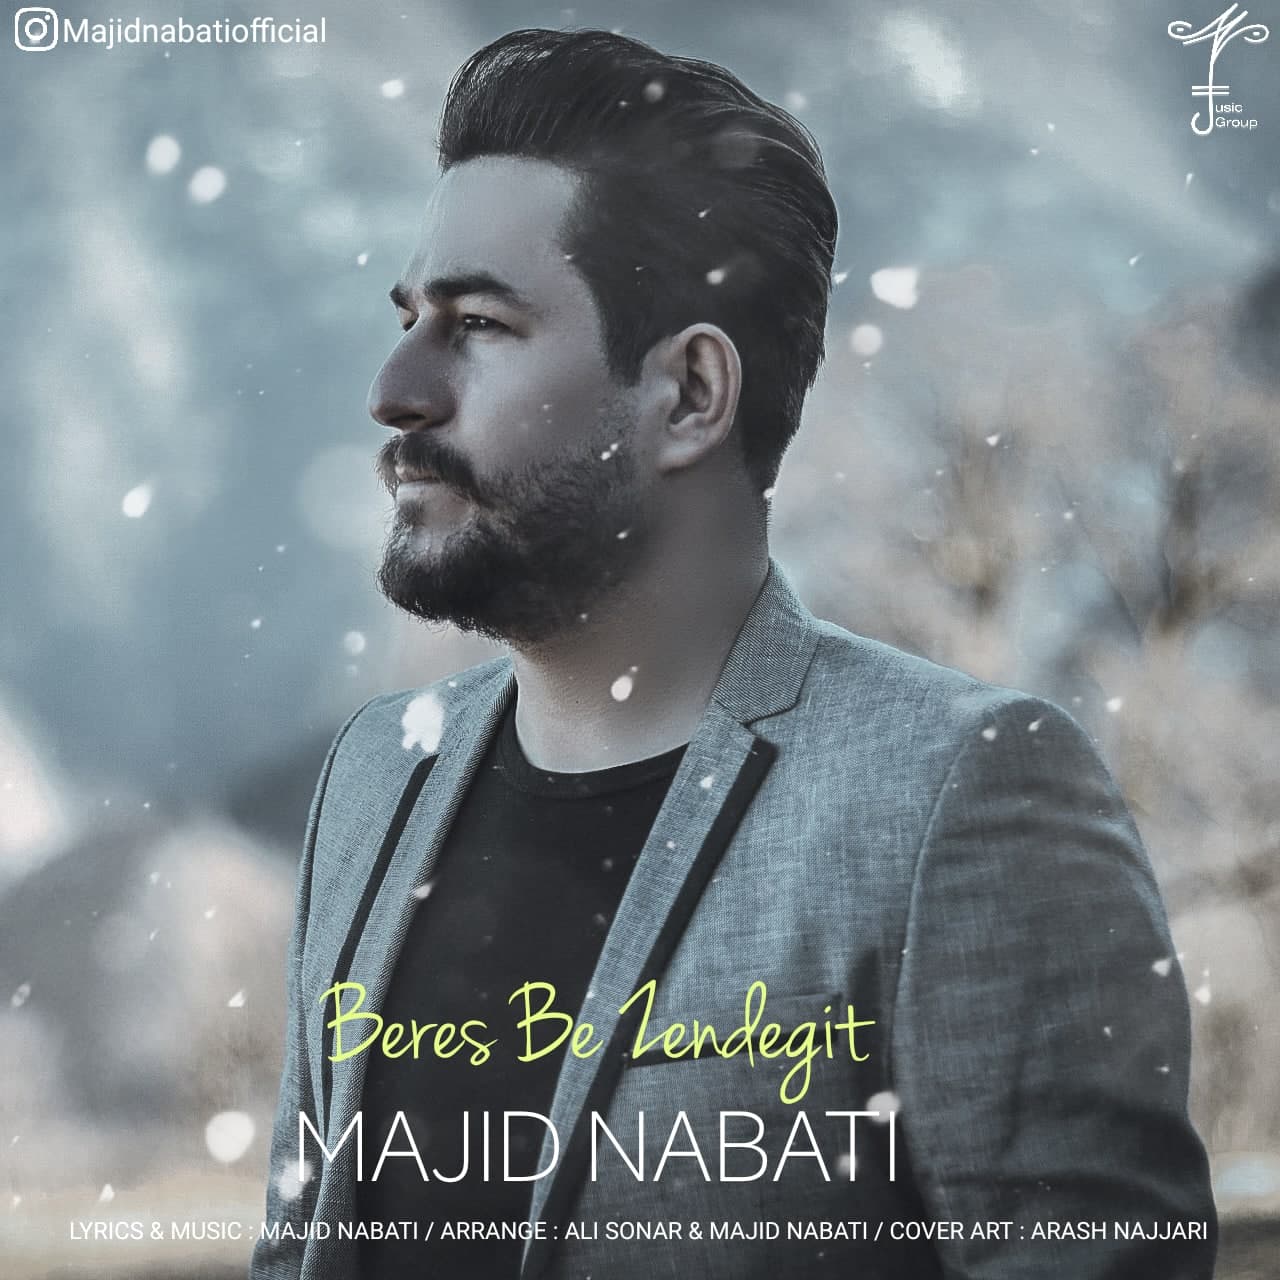 Majid Nabati – Beres Be Zendegit